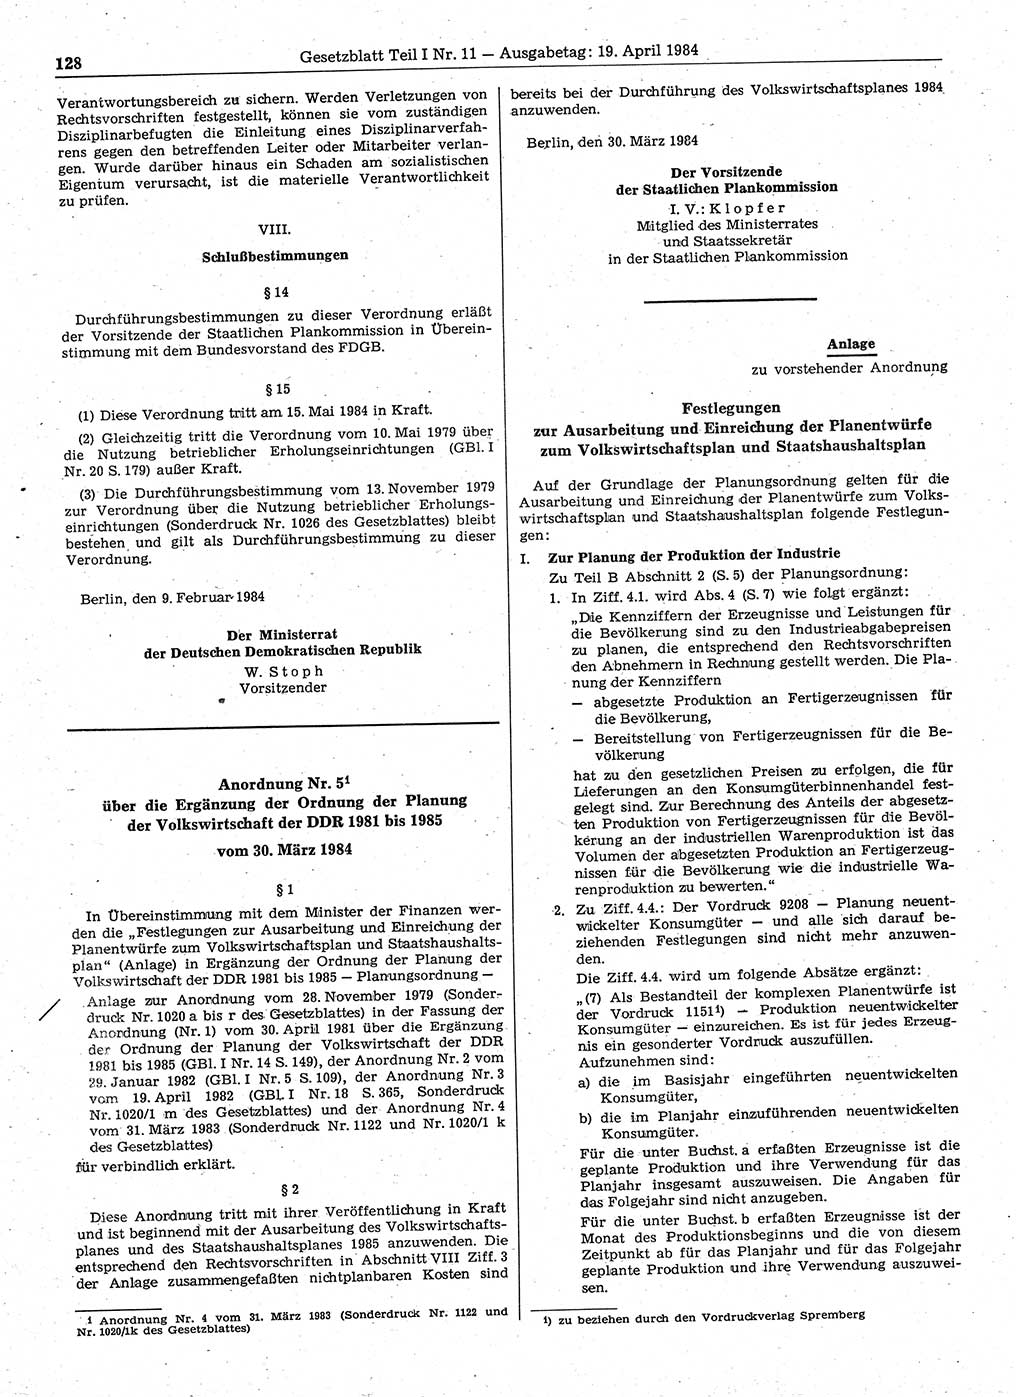 Gesetzblatt (GBl.) der Deutschen Demokratischen Republik (DDR) Teil Ⅰ 1984, Seite 128 (GBl. DDR Ⅰ 1984, S. 128)